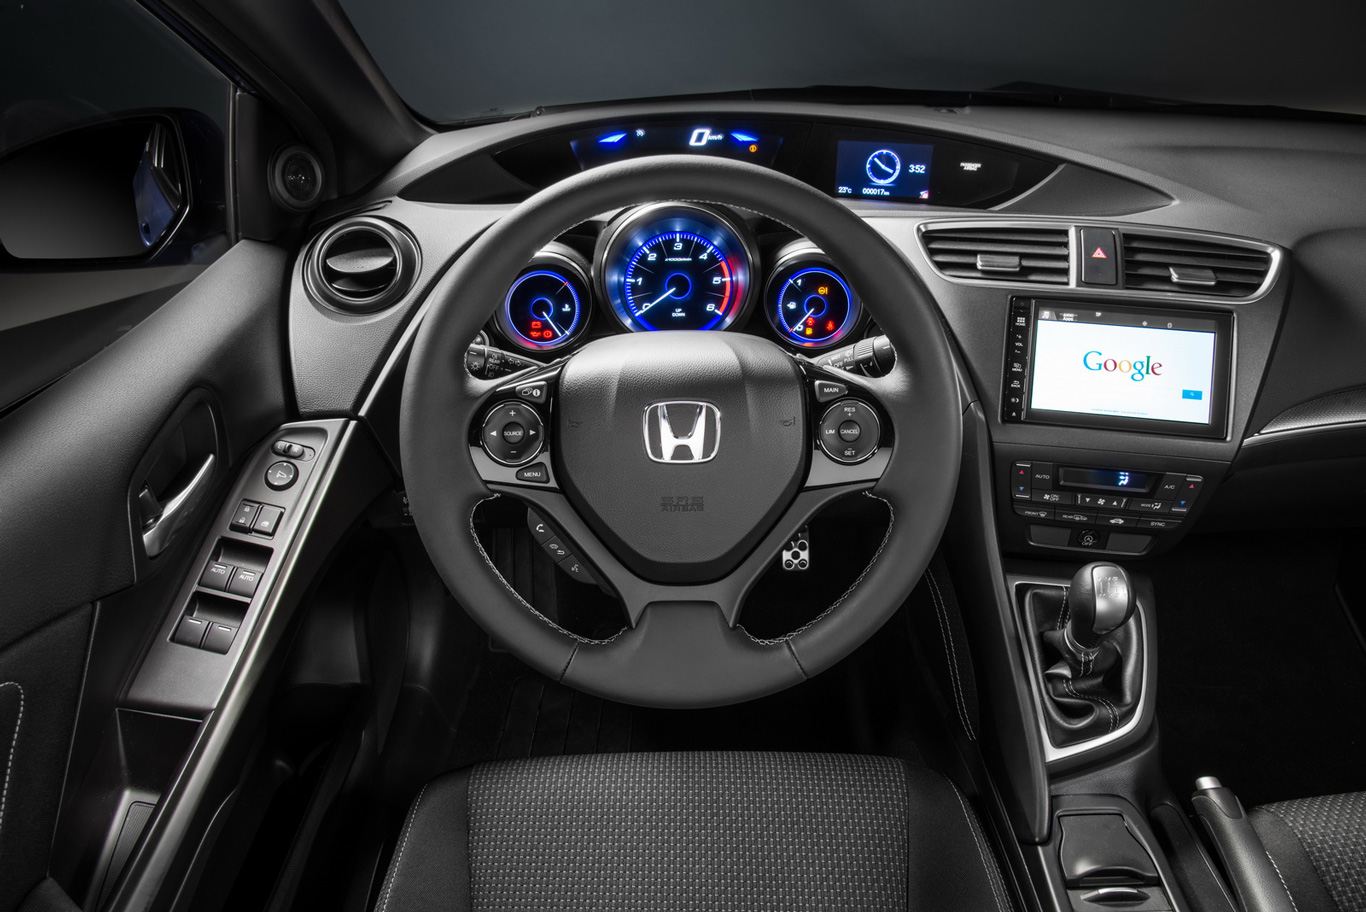 NVIDIA Tegra trafi do samochodów Honda w 2015 roku PurePC.pl